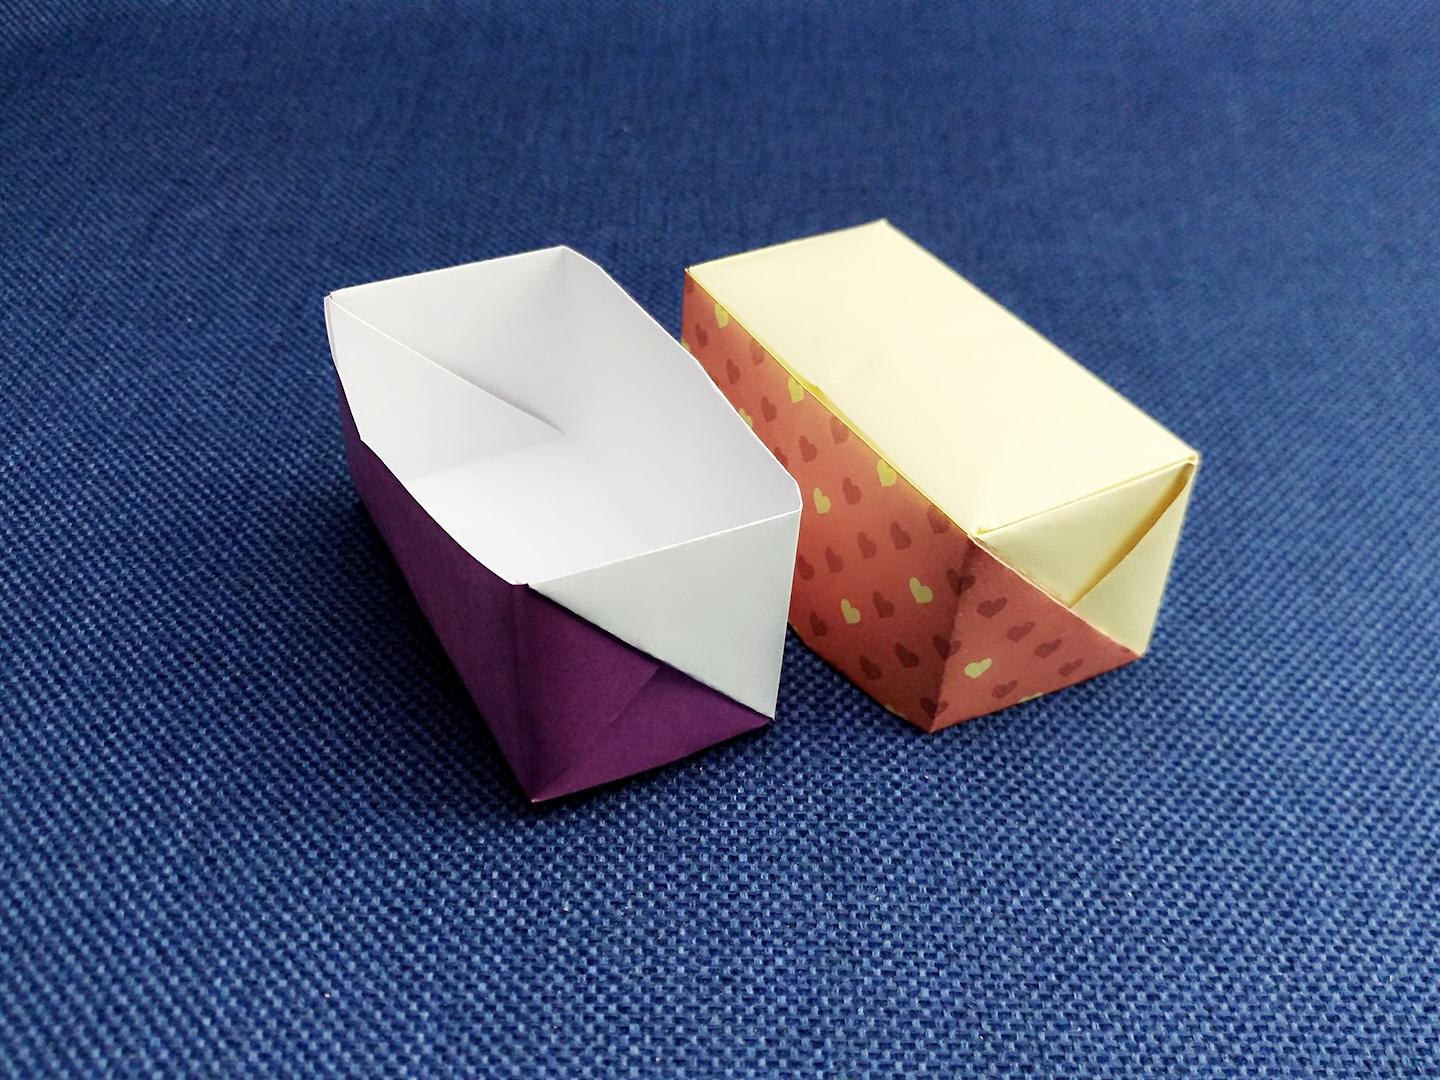 用折纸做盒子轻松好学,快来吧